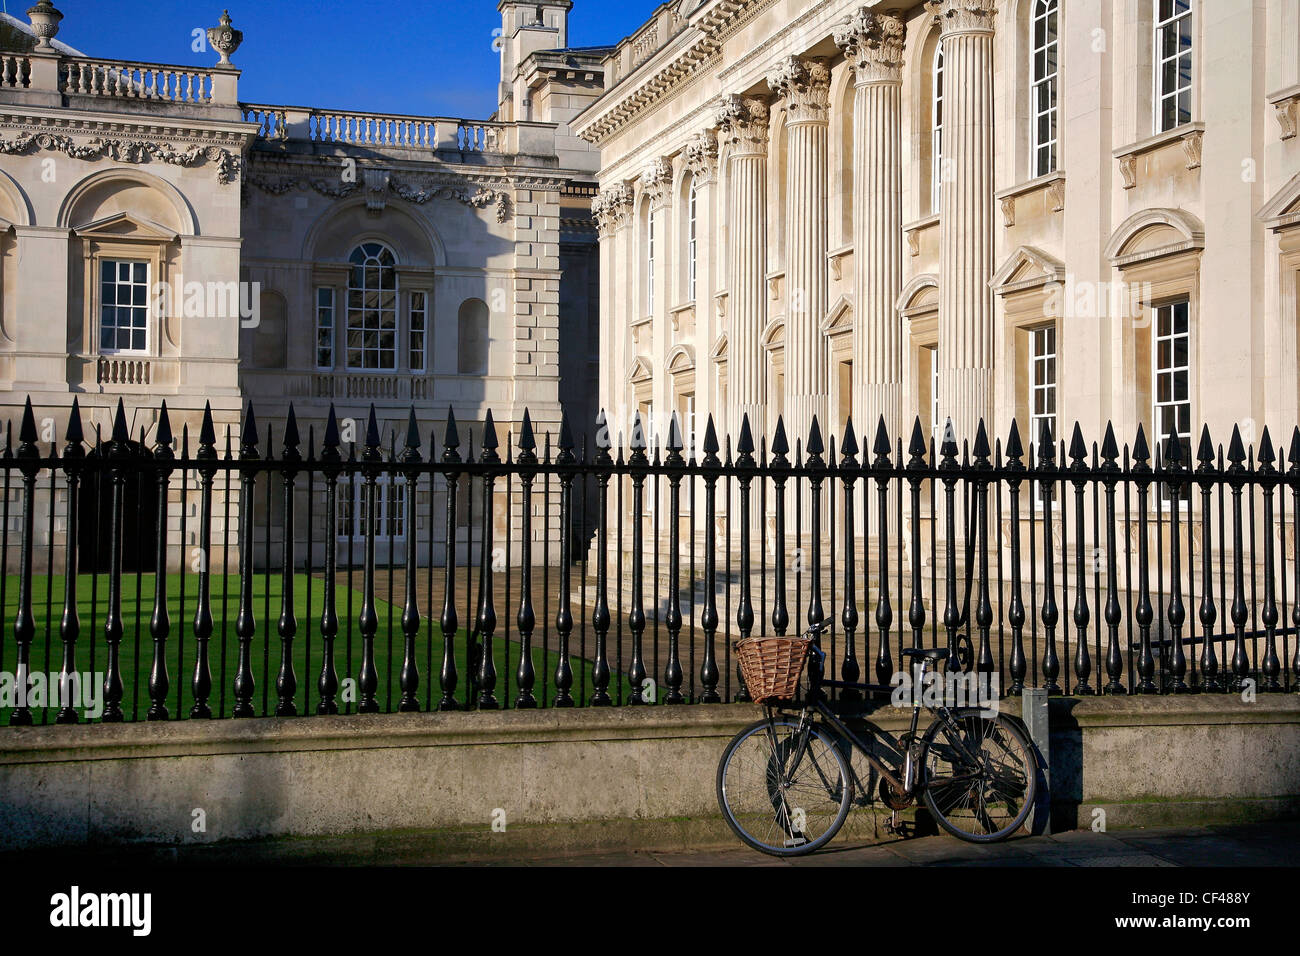 Una cesta de Mimbres fuera del ciclo de la cámara del Senado, de la ciudad de Cambridge, Cambridgeshire, Inglaterra, Reino Unido. Foto de stock